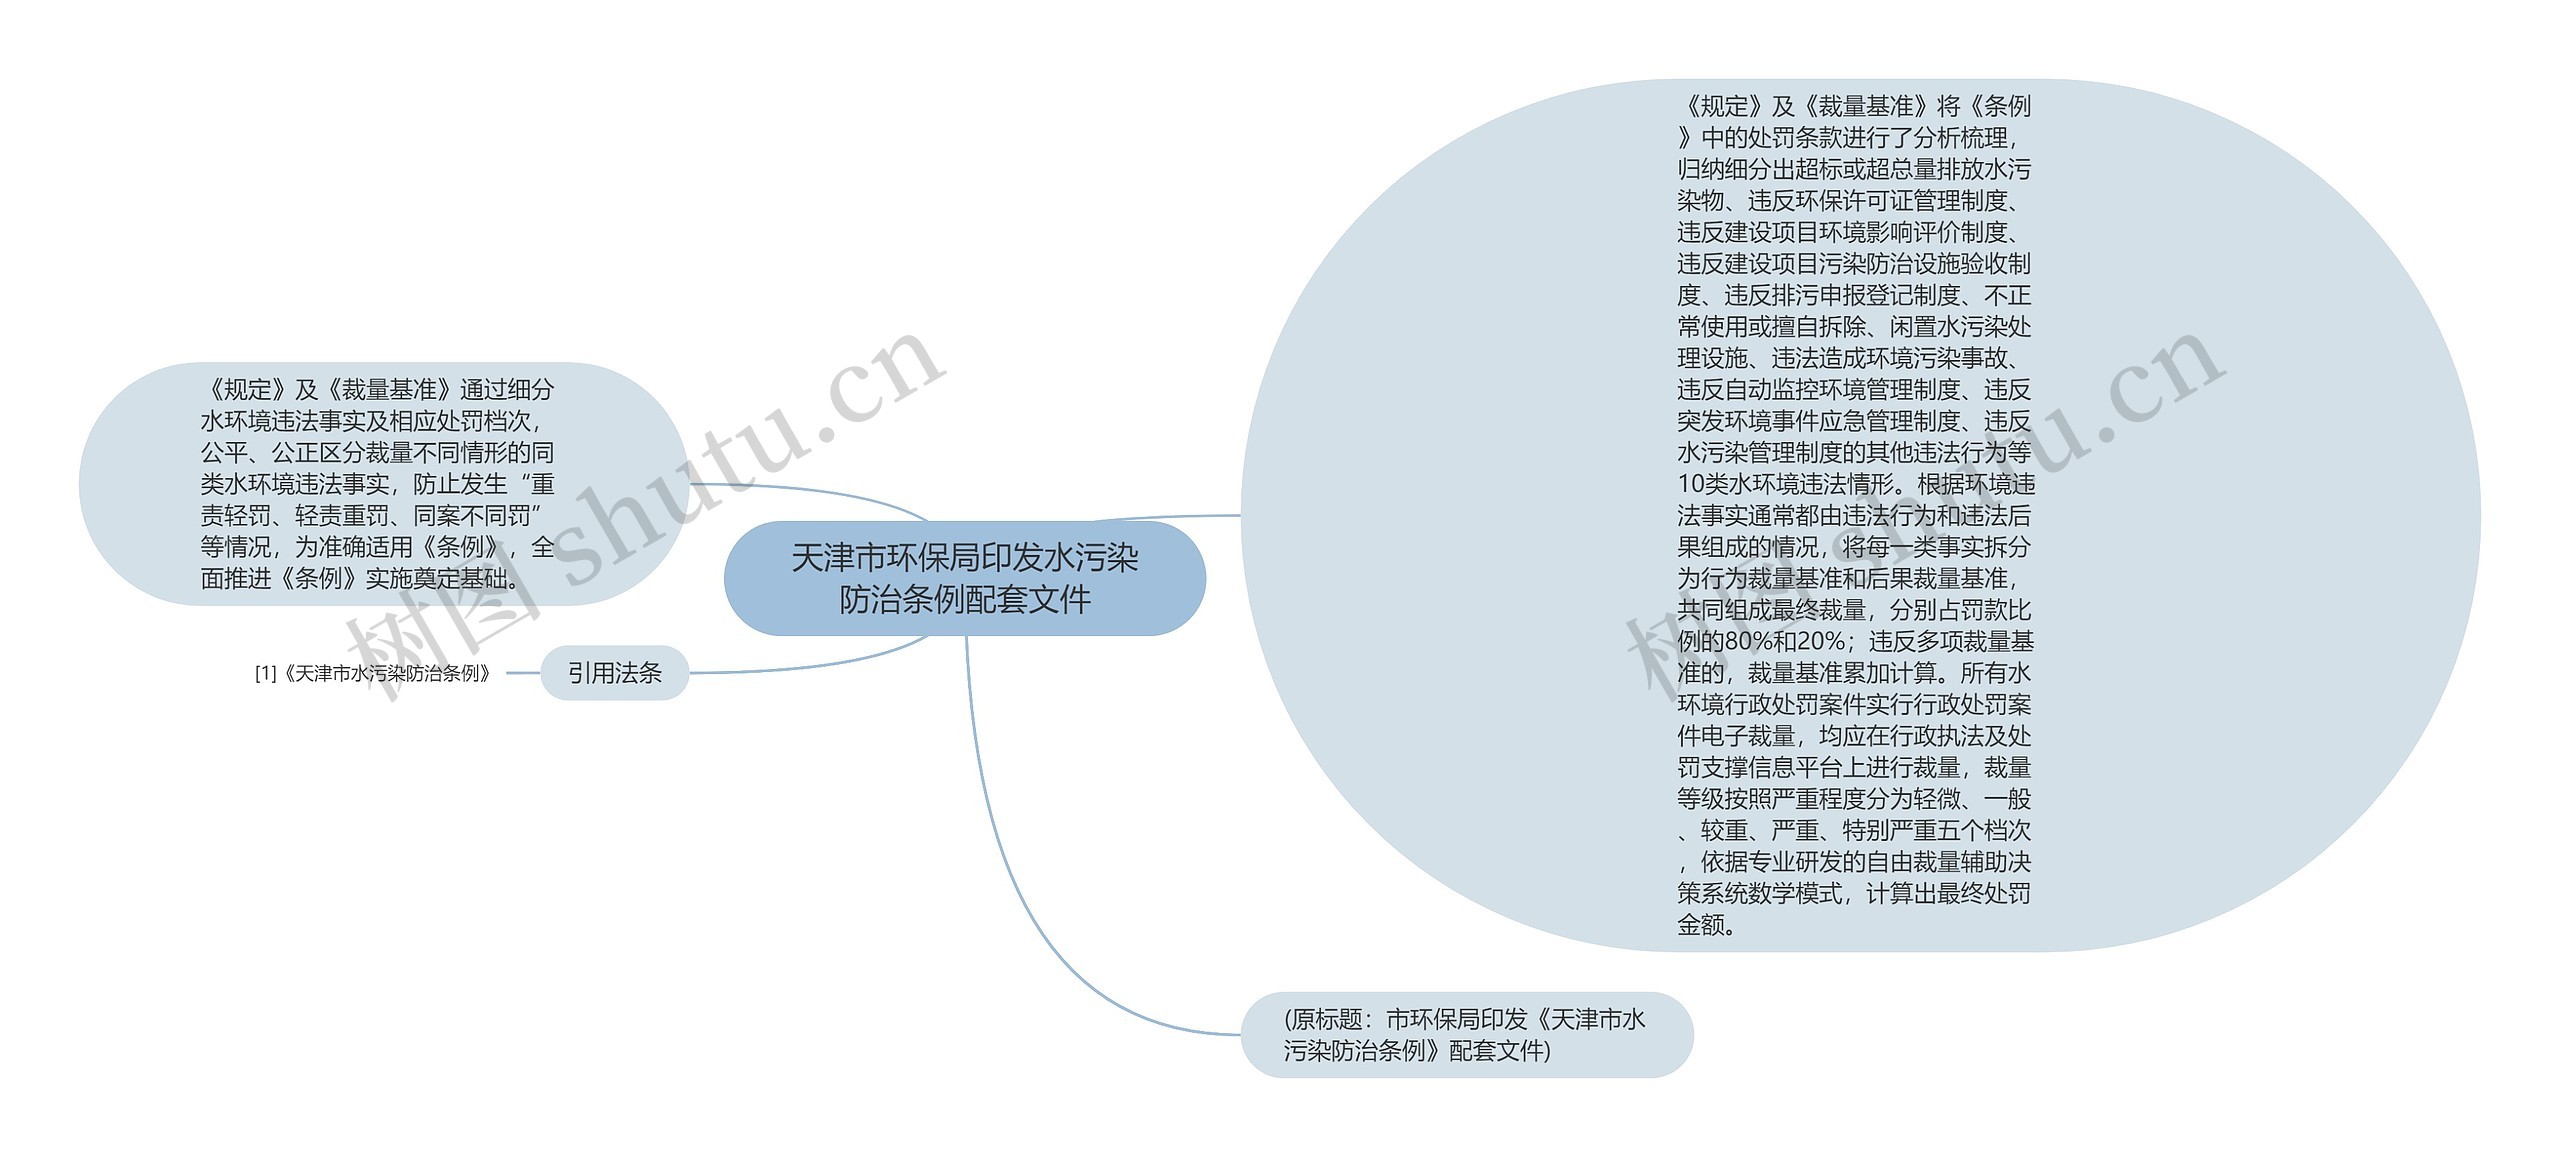 天津市环保局印发水污染防治条例配套文件思维导图